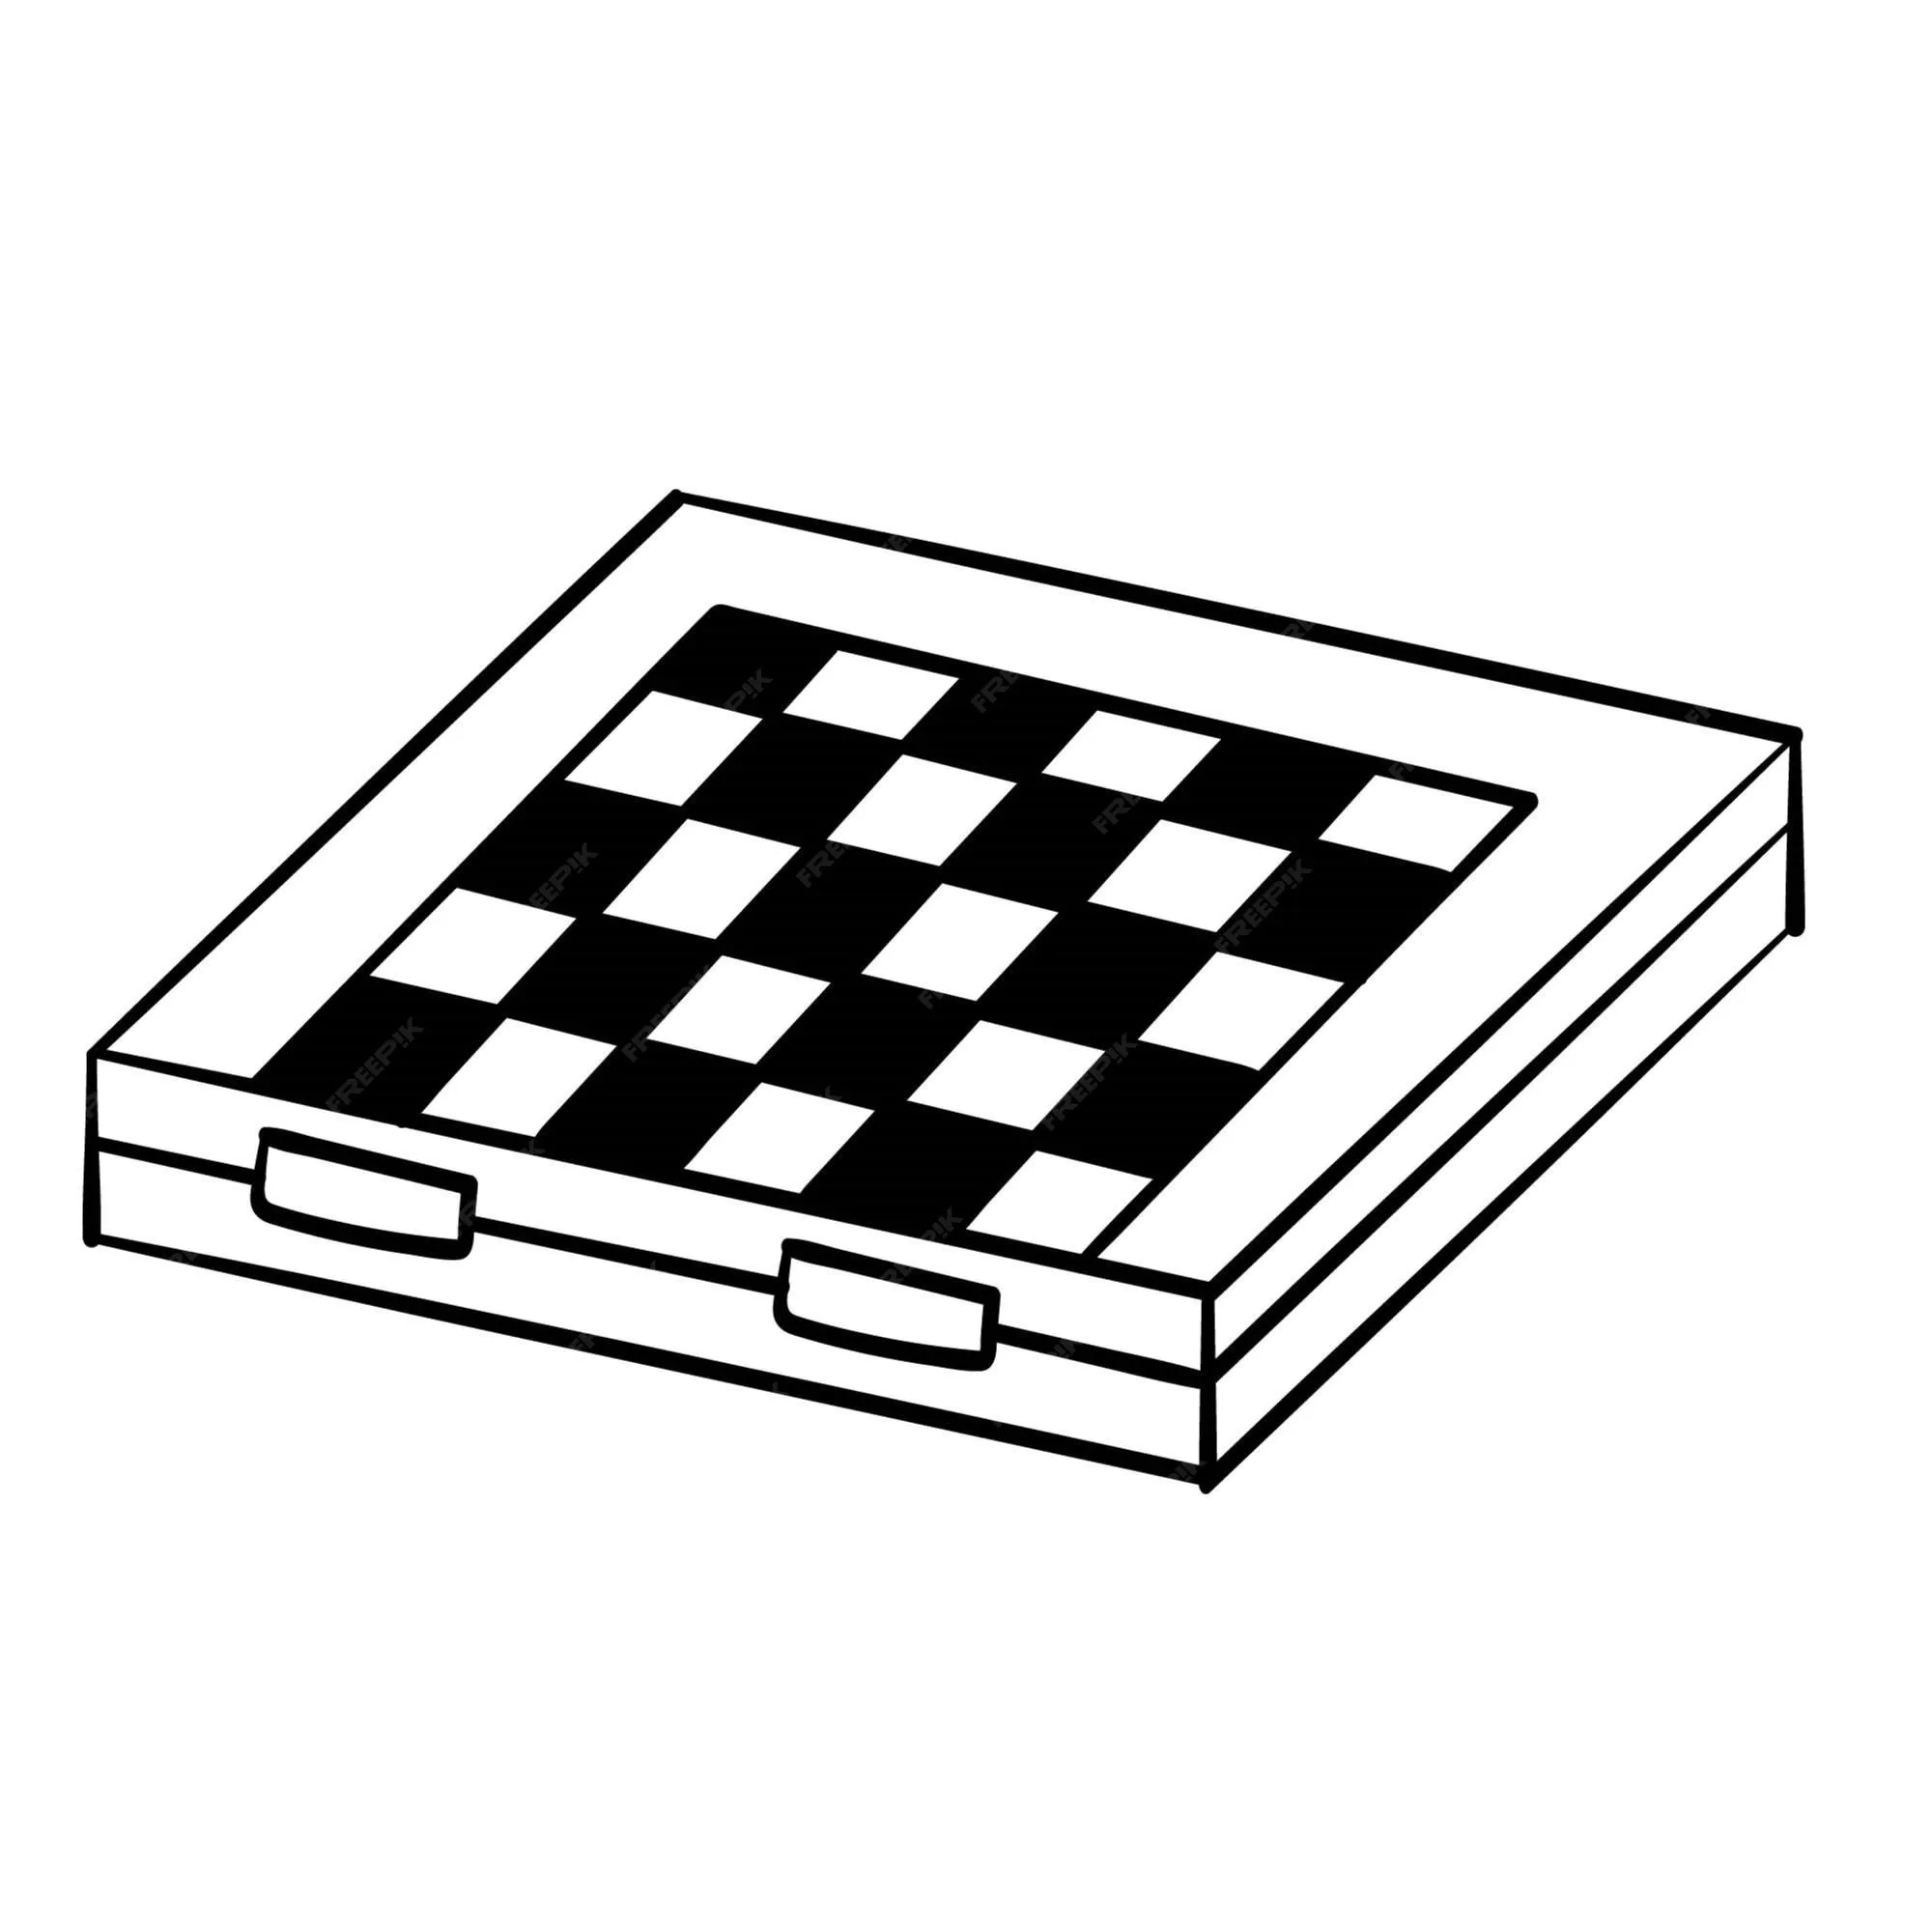 Doodle pegatina juego de tablero de ajedrez | Vector Premium